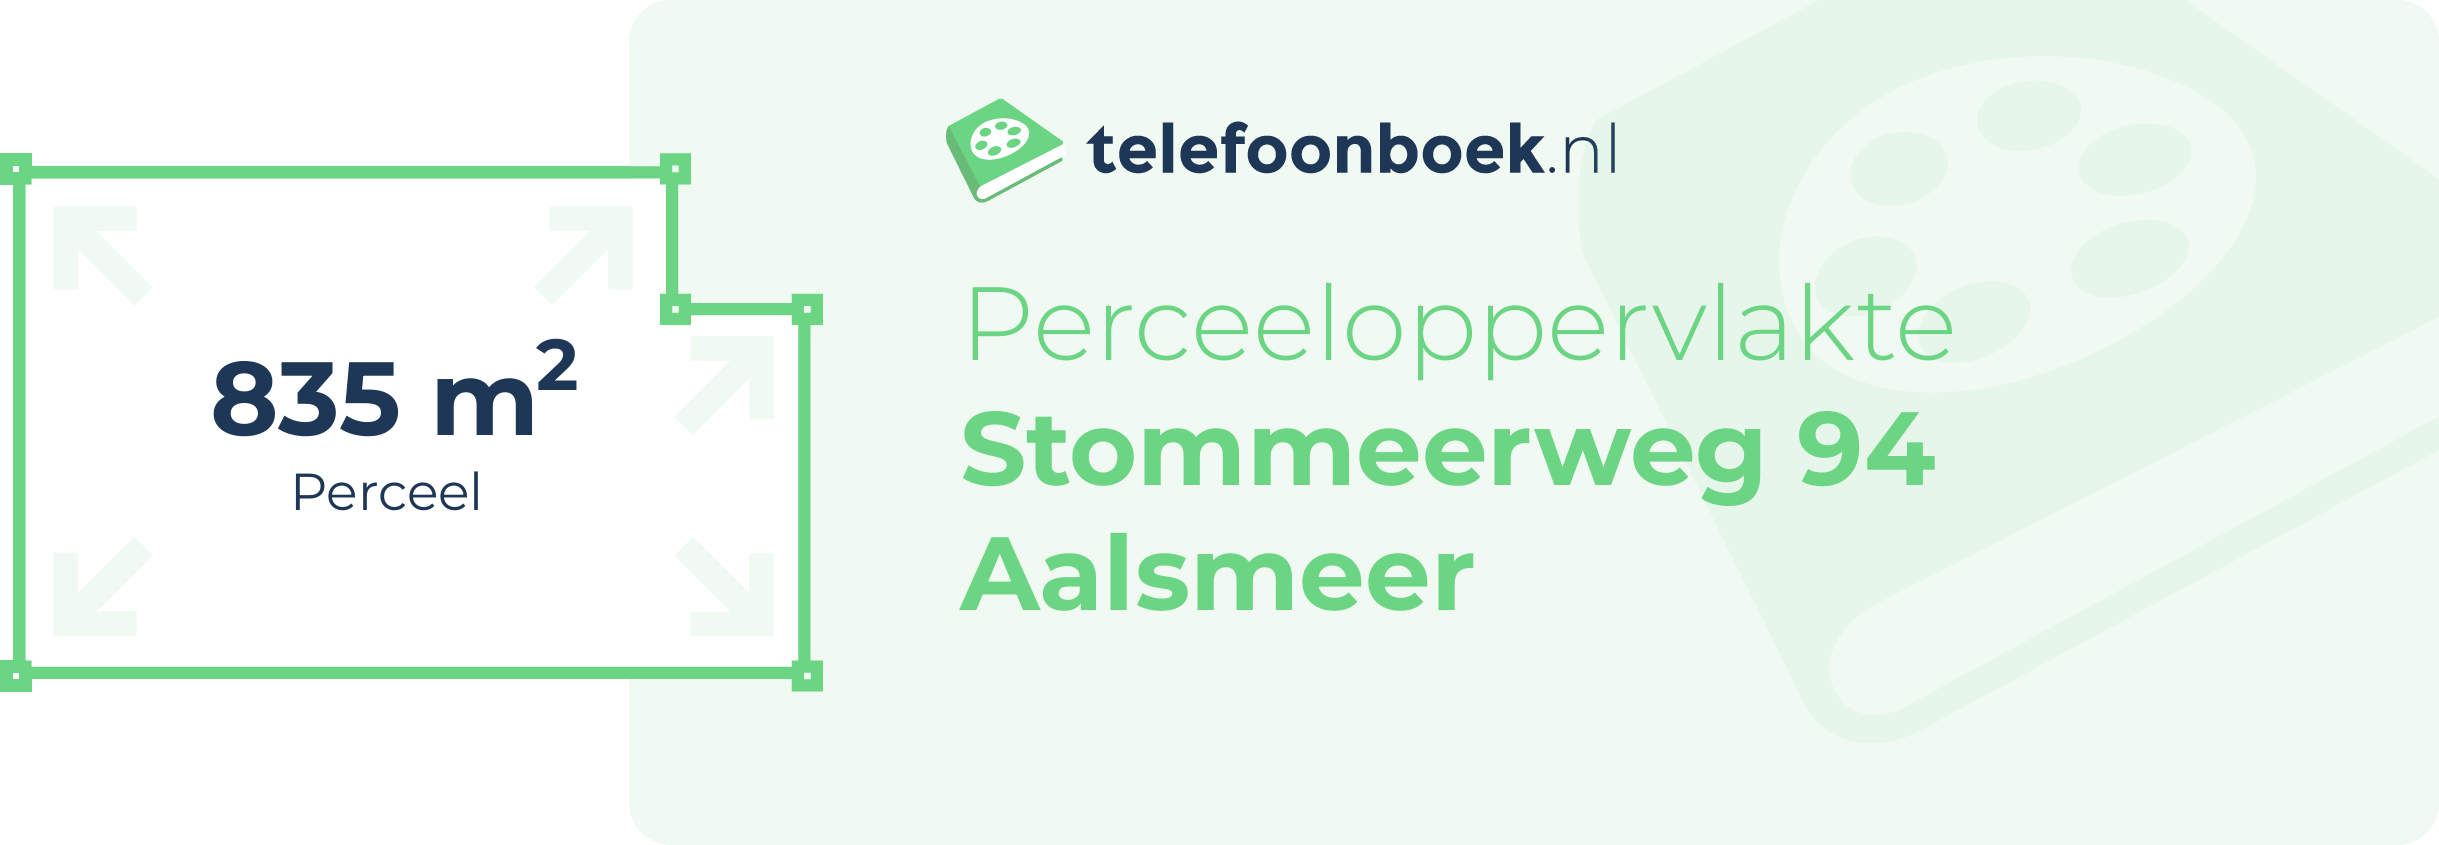 Perceeloppervlakte Stommeerweg 94 Aalsmeer